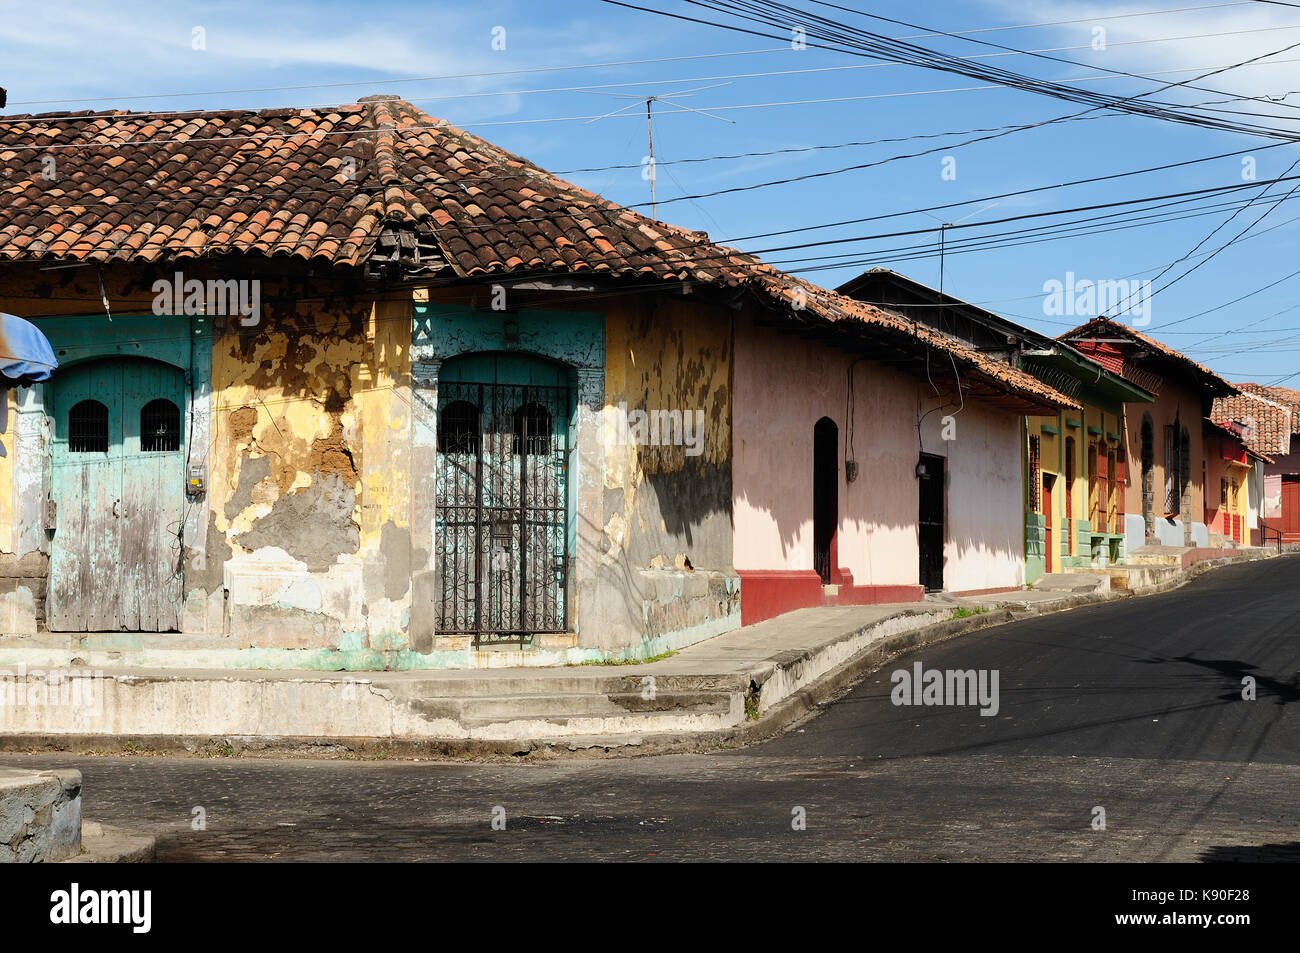 Mittelamerika, Leon-der kolonialen spanischen Stadt in Nicaragua hat die größte Kathedrale in Mittelamerika und farbenfrohe Architektur Stockfoto